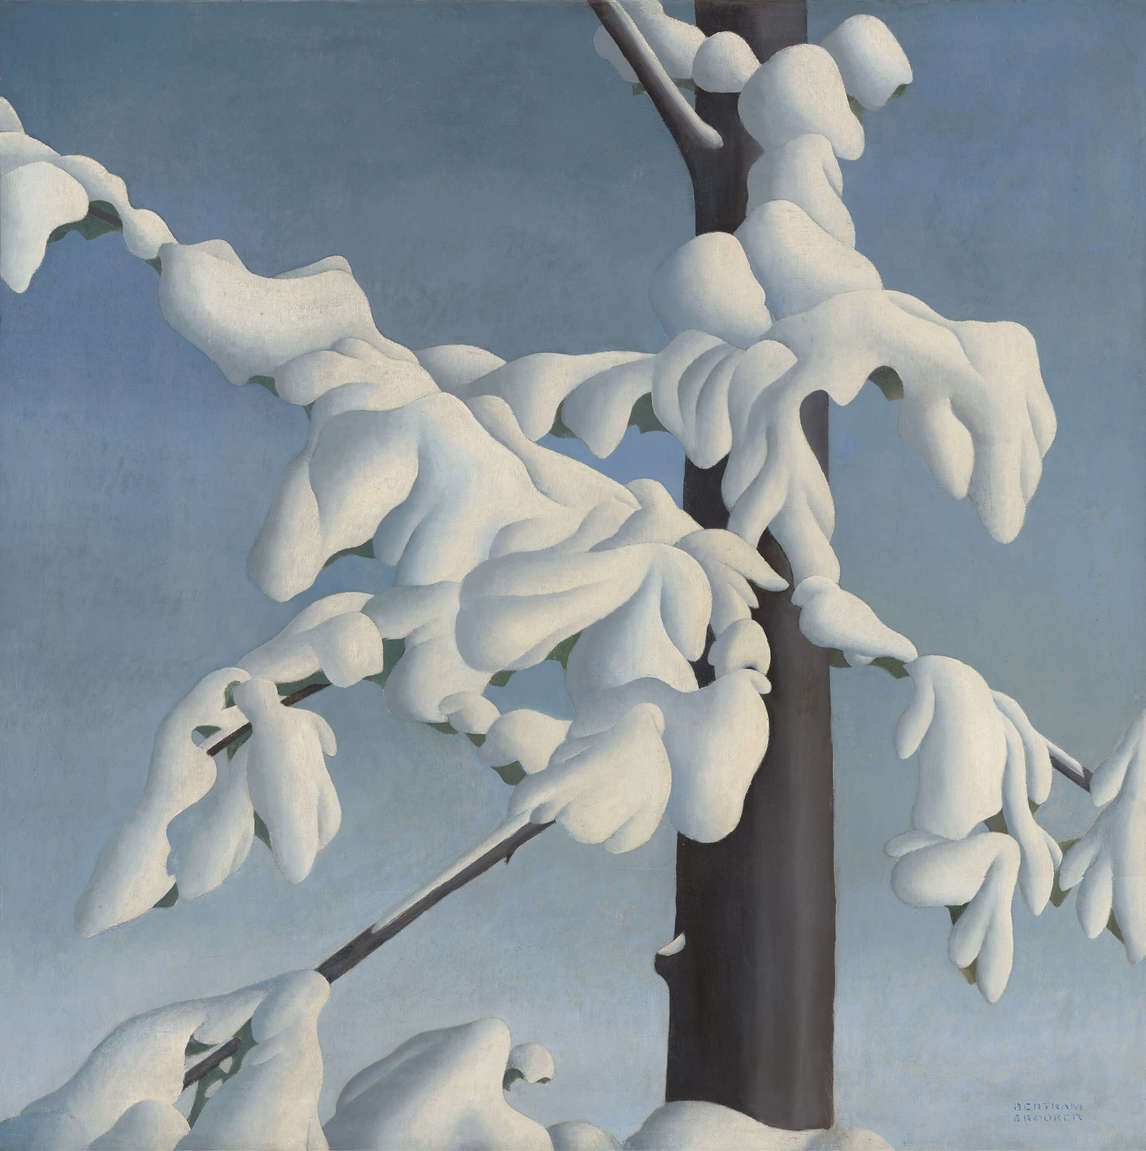 Snow Fugue (Fugue enneigée), 1930